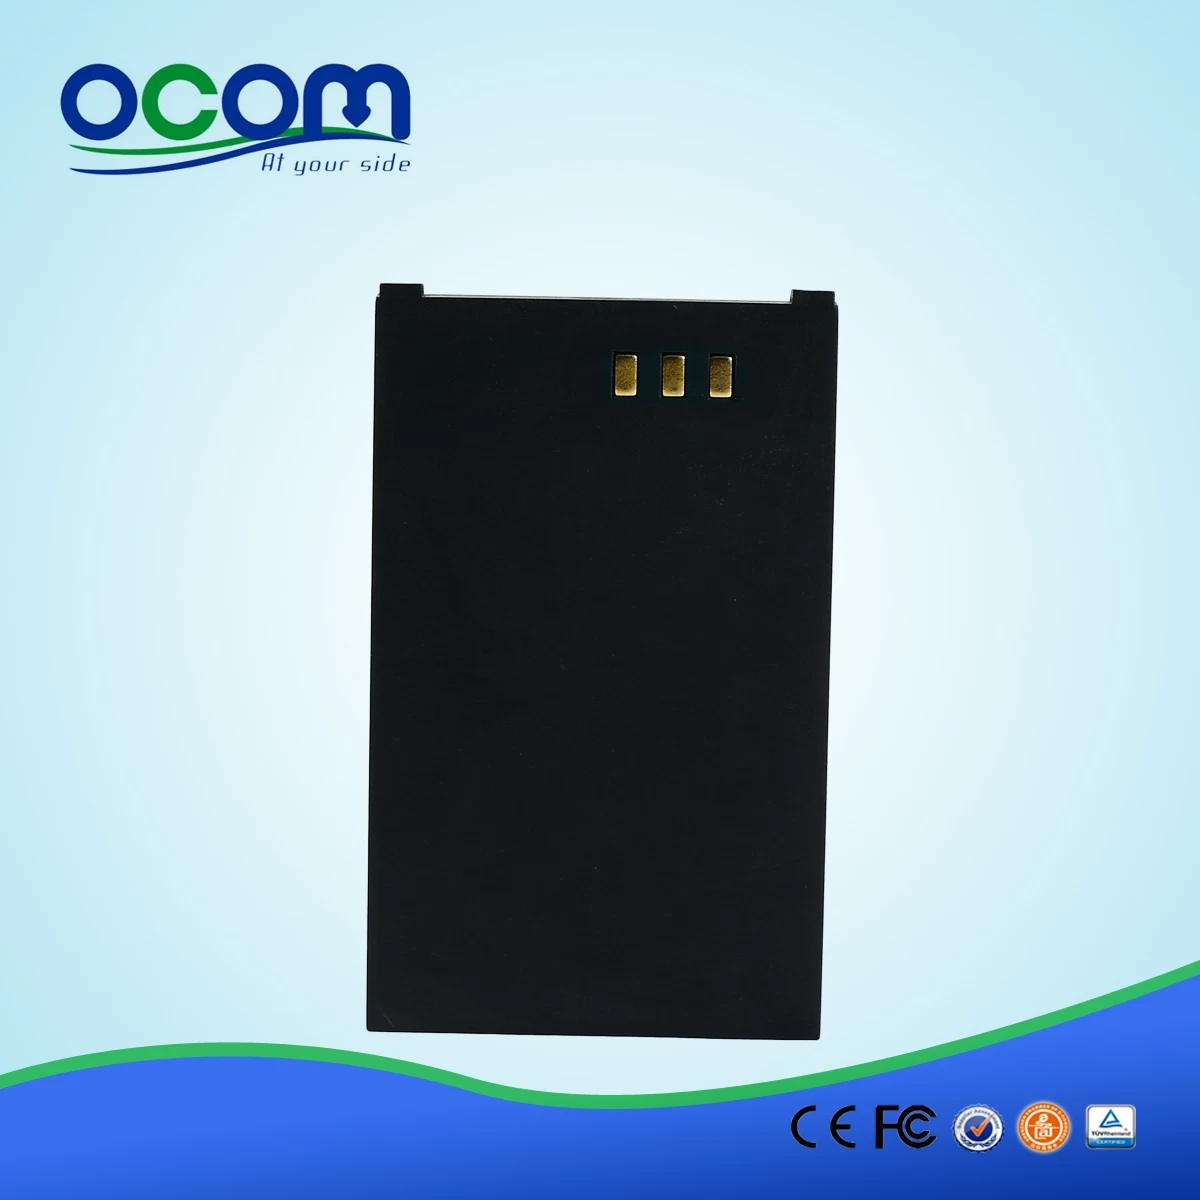 OCPP-M082 High quality 80mm usb handheld mobile bluetooth printer